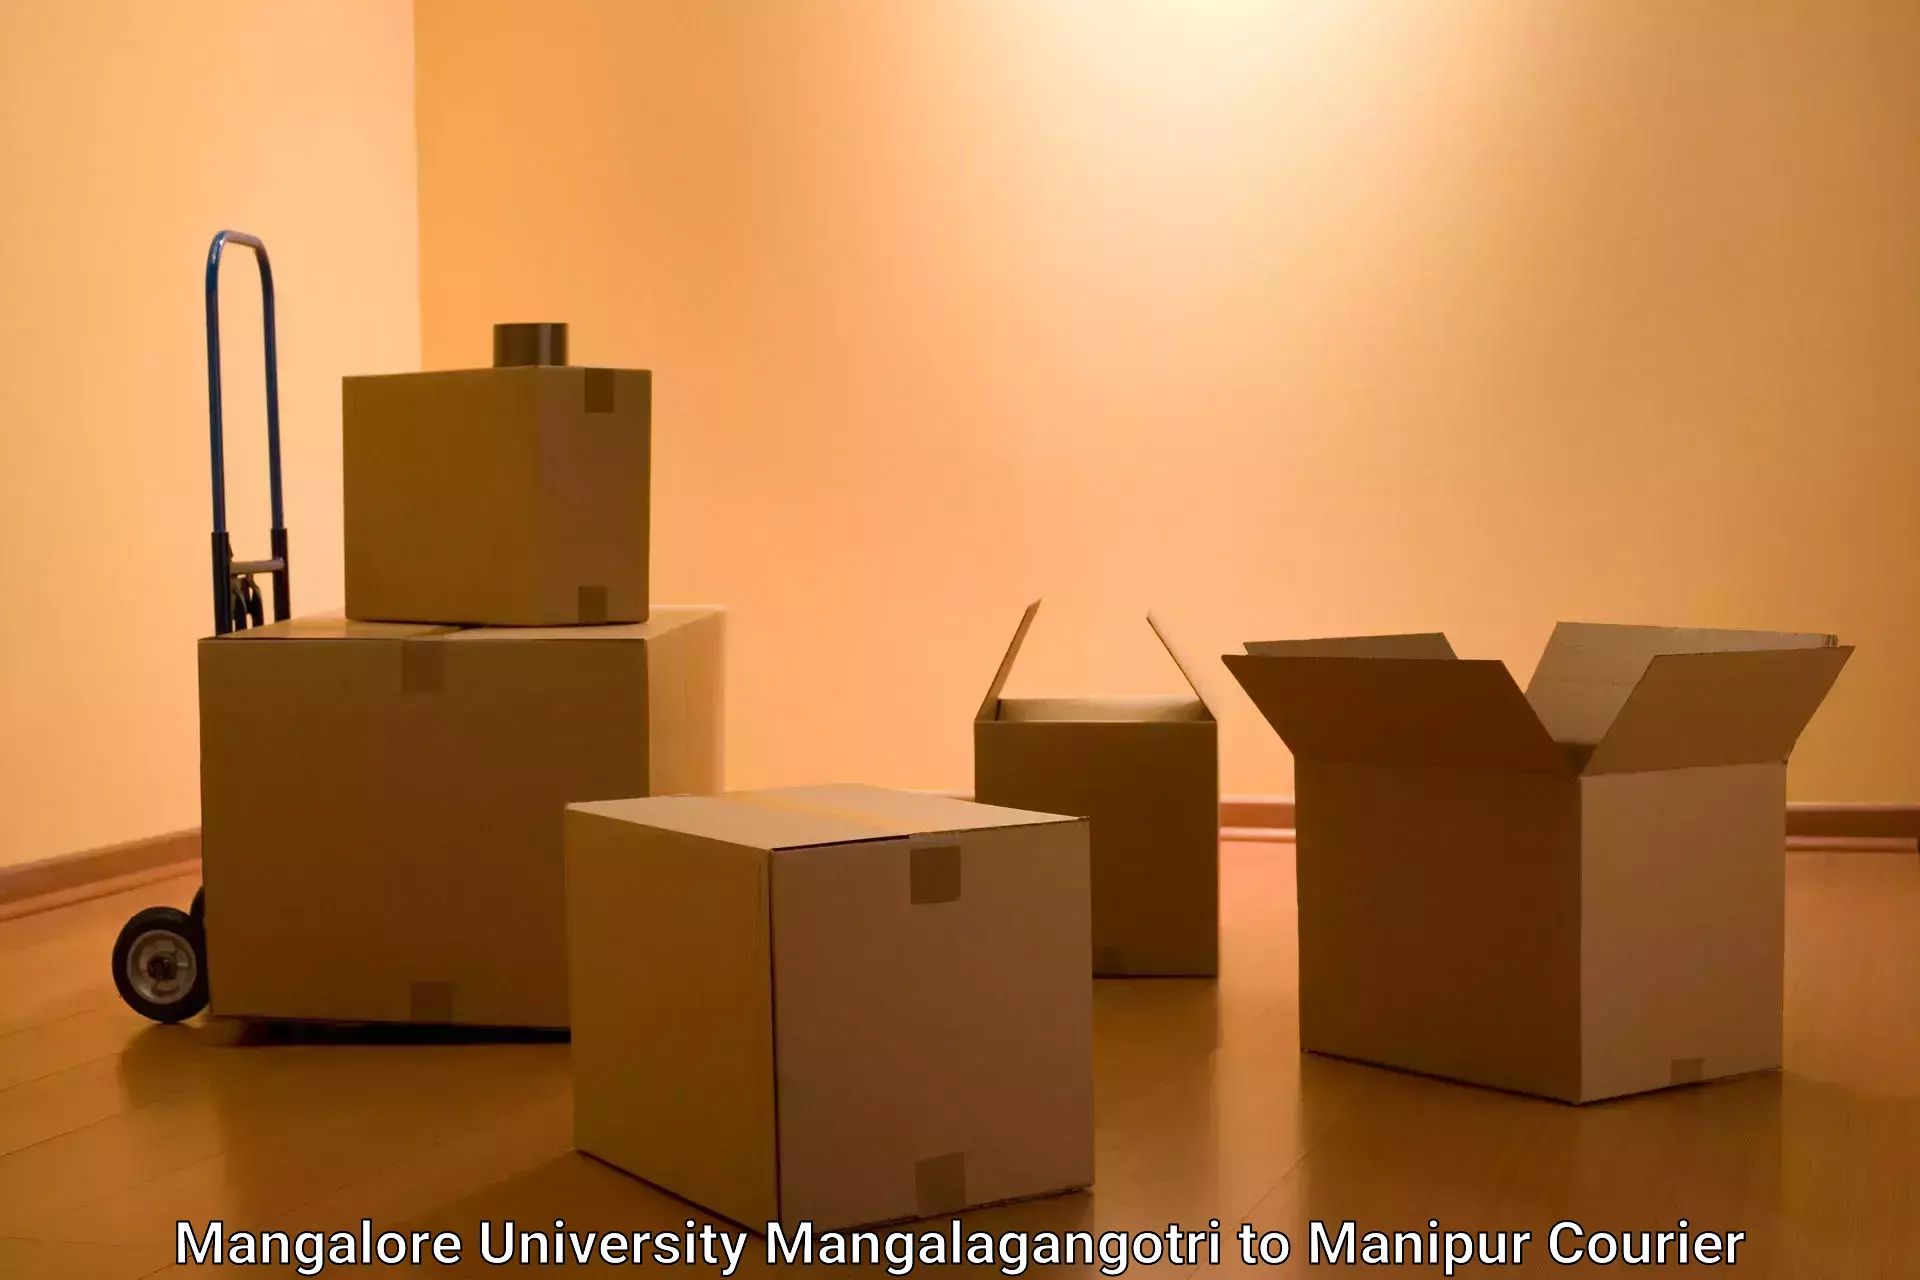 Customized delivery options Mangalore University Mangalagangotri to Chandel